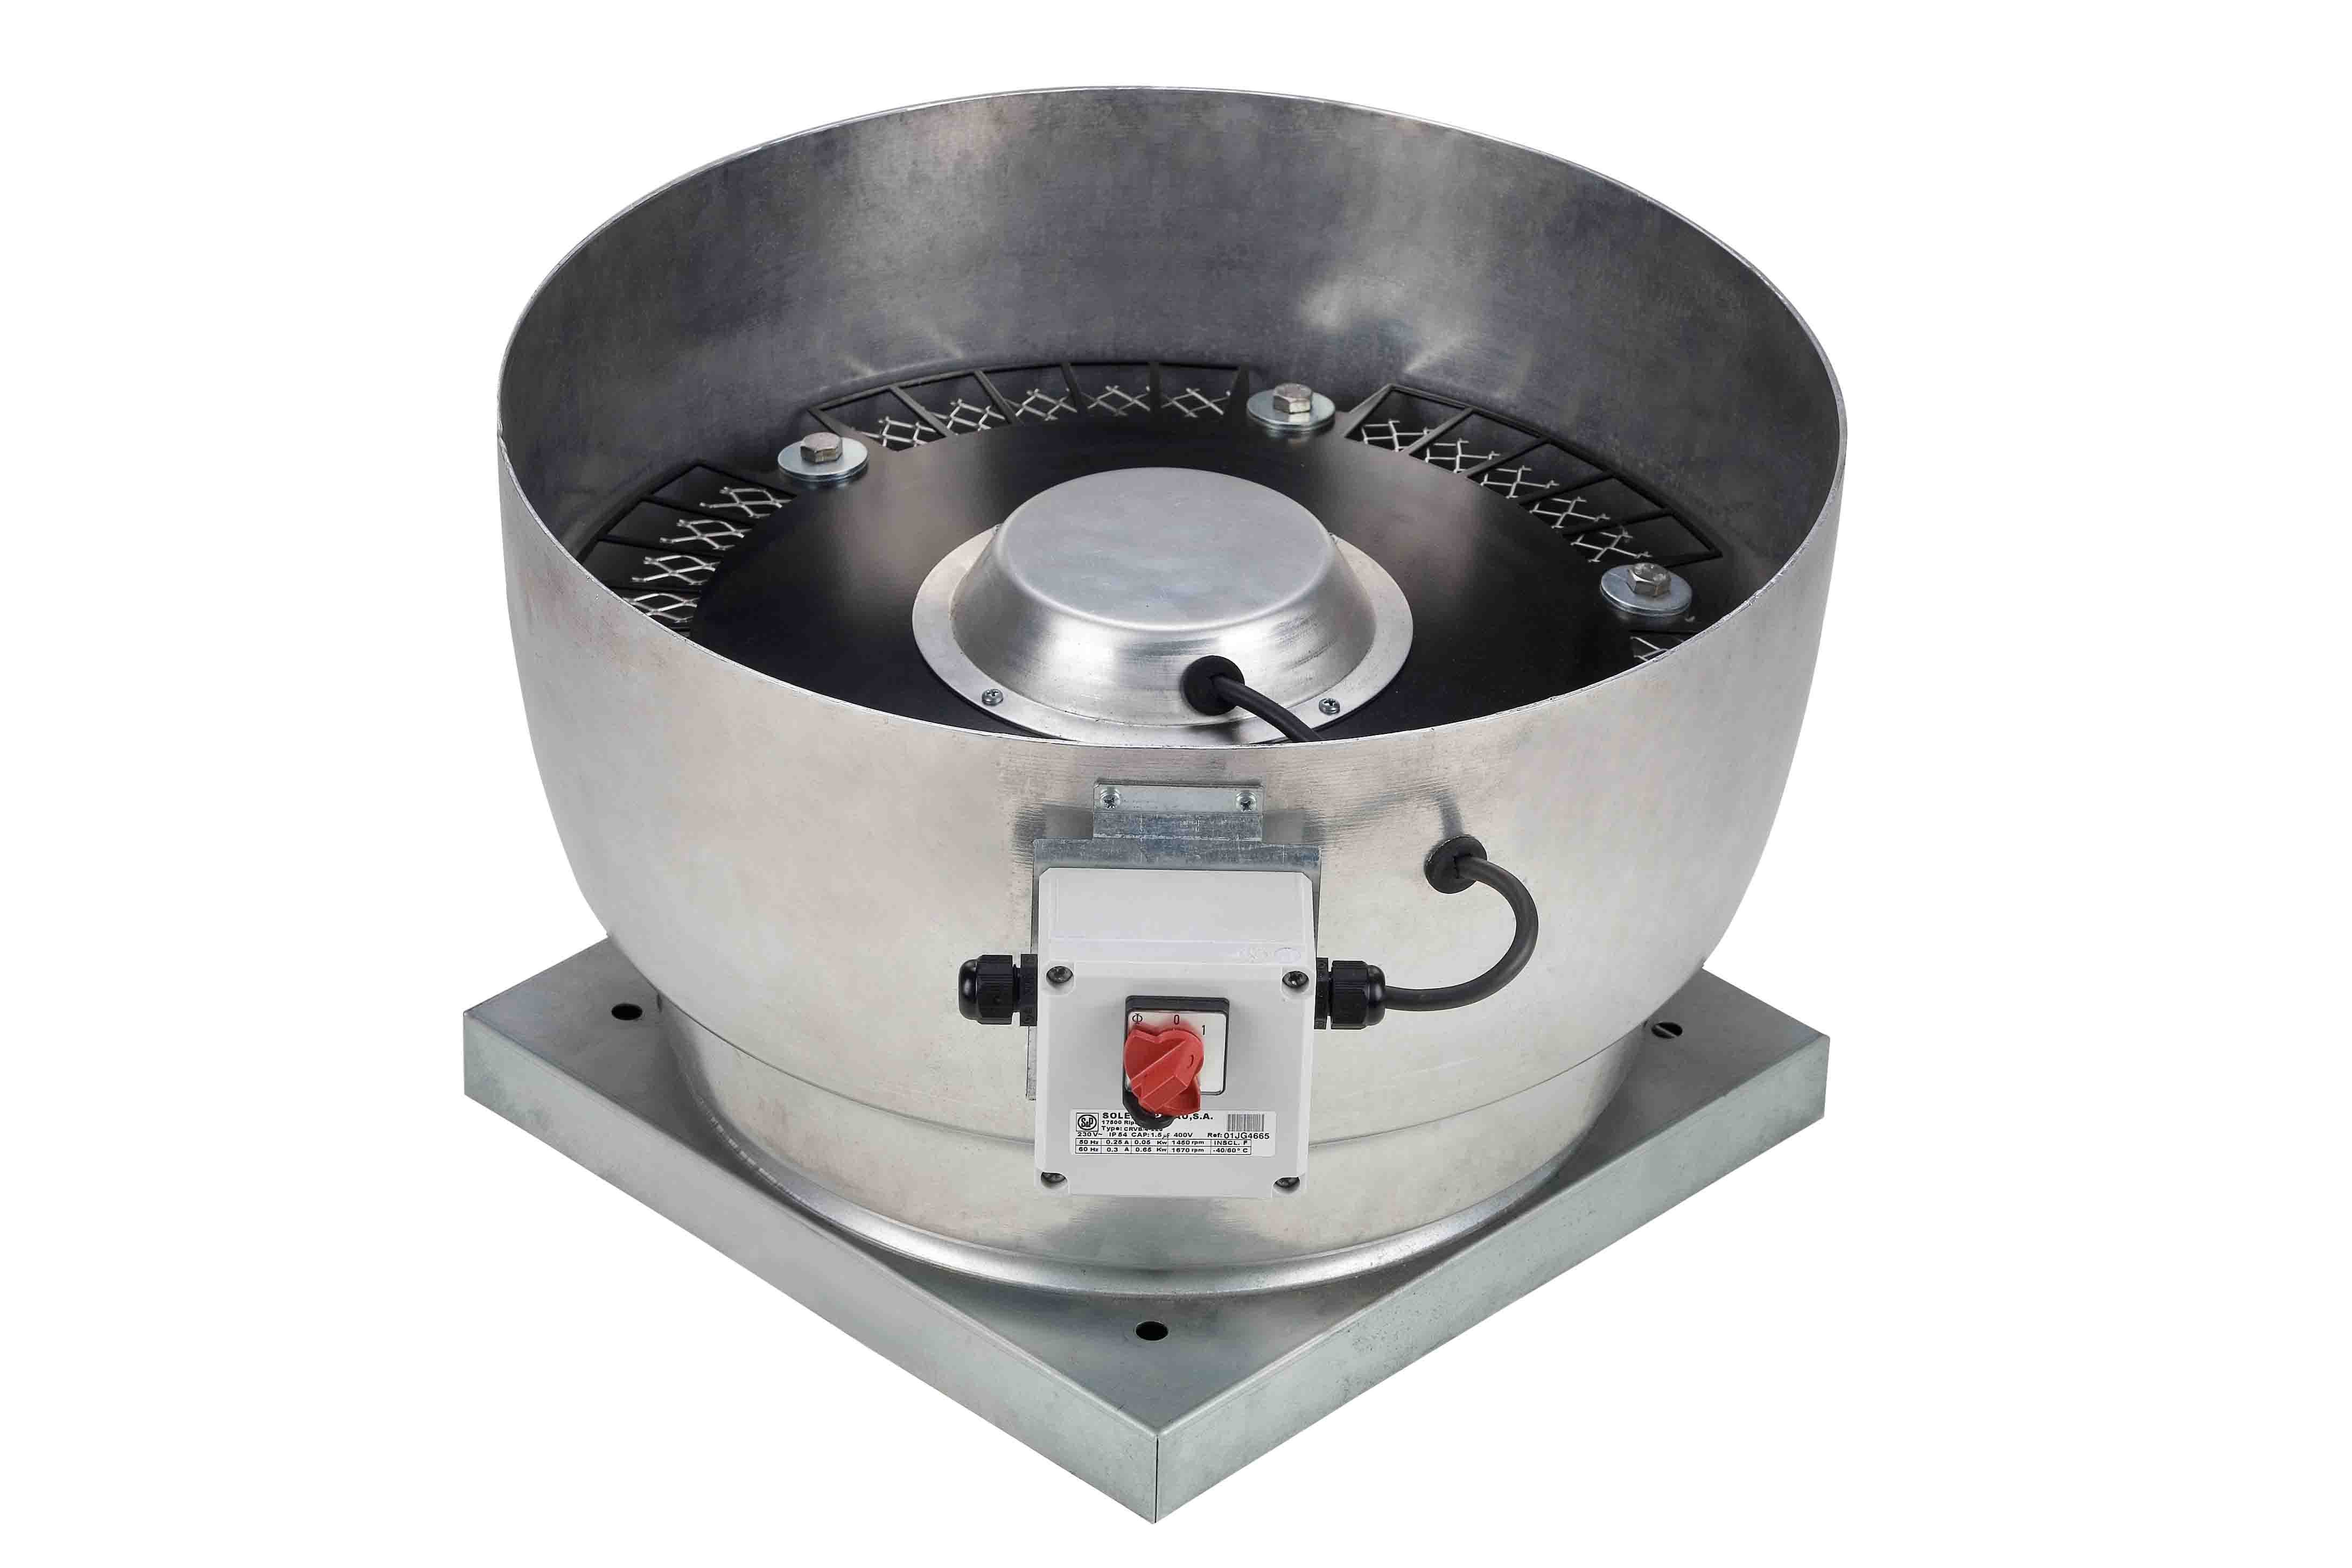 S&P - Tourelle centrifuge verticale monophasée, 230V, 4 pôles, diamètre 225 mm